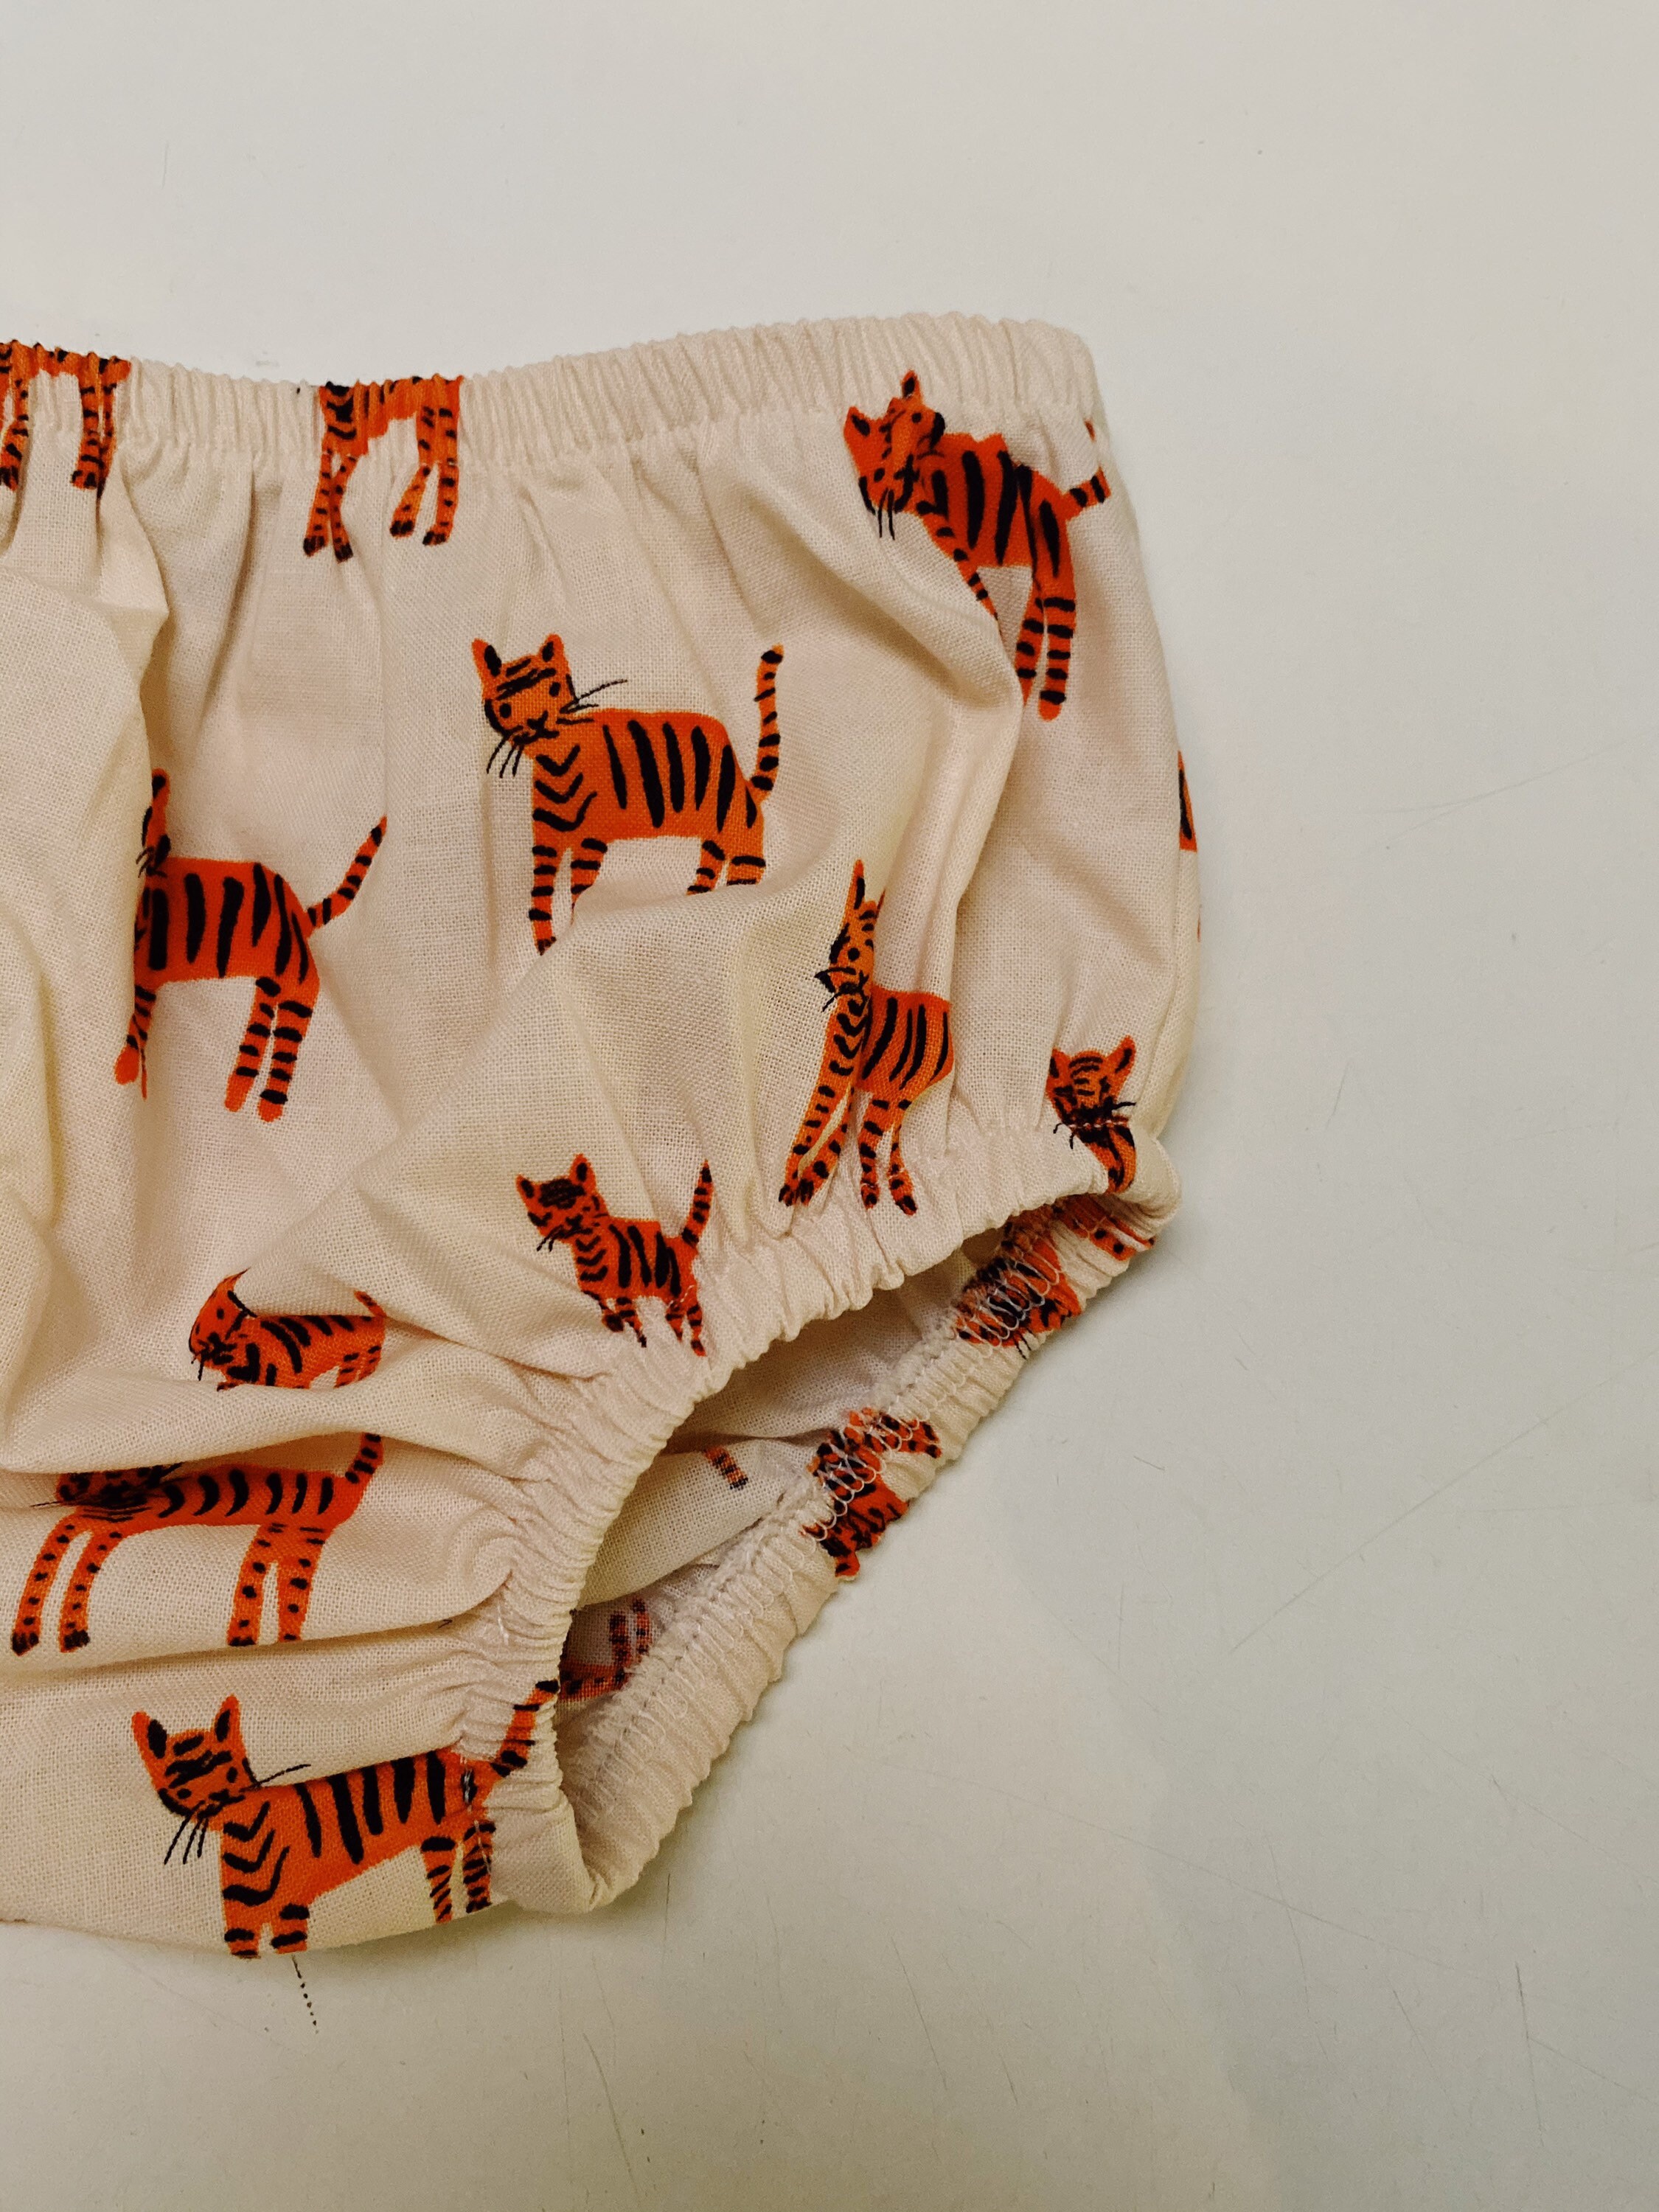 Kleding Jongenskleding Ondergoed Jungle leeuw 3T boxer slips ondergoed 